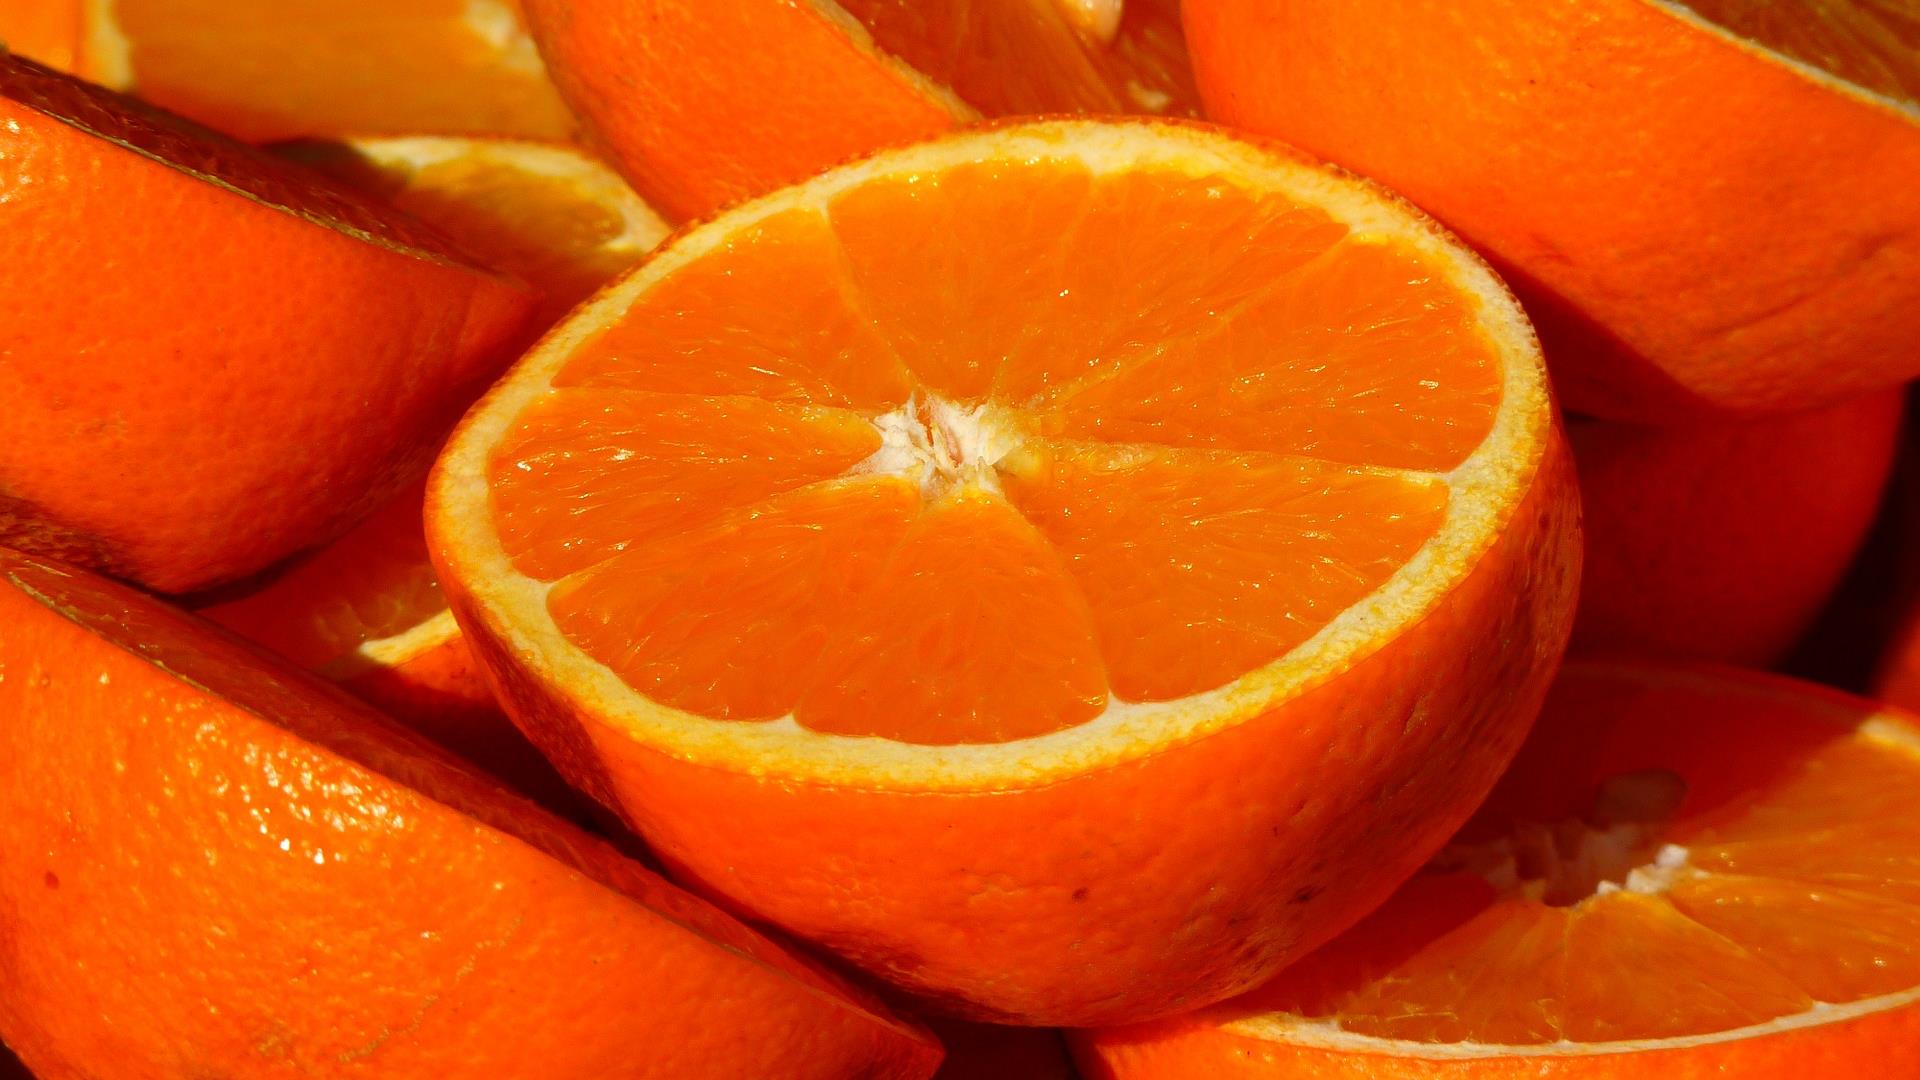 Oranges 15046 1920